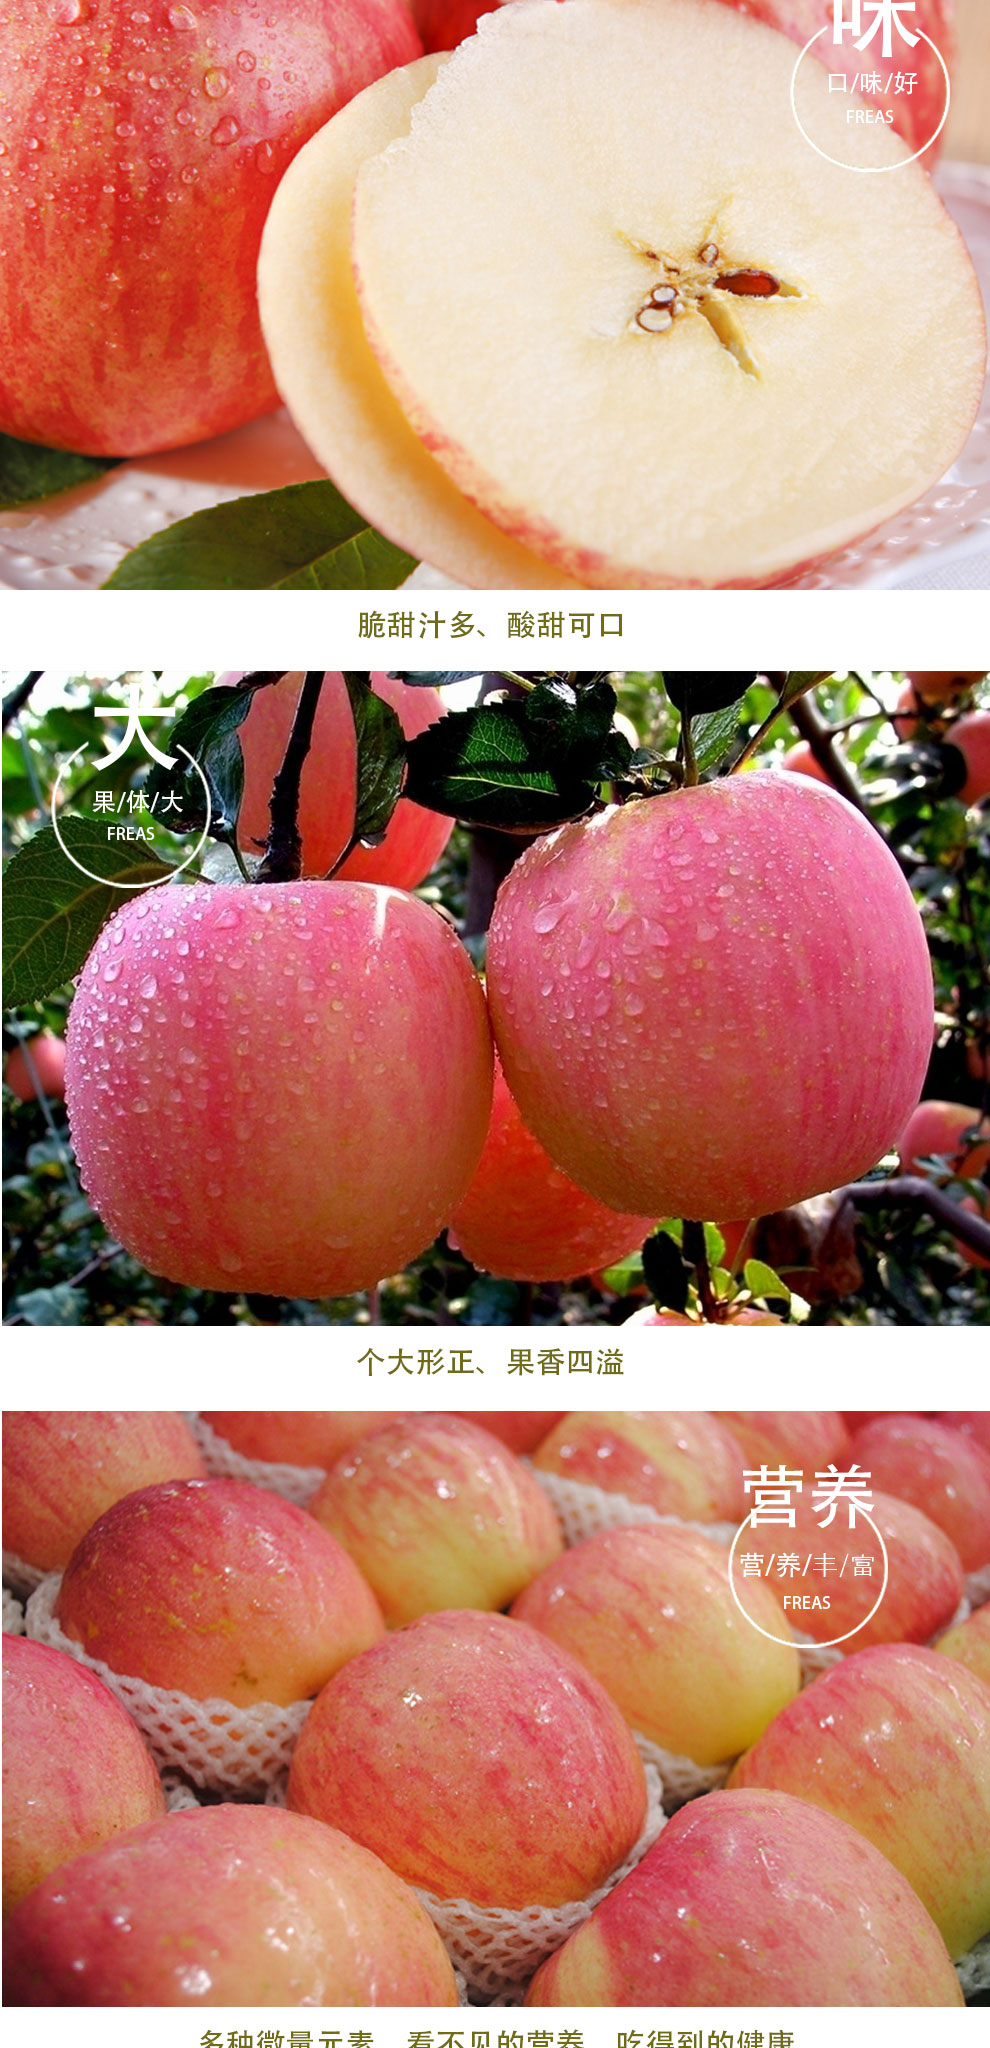 【渭南馆】苹果红富士苹果陕西特产白水苹果白水红富士苹果新鲜水果